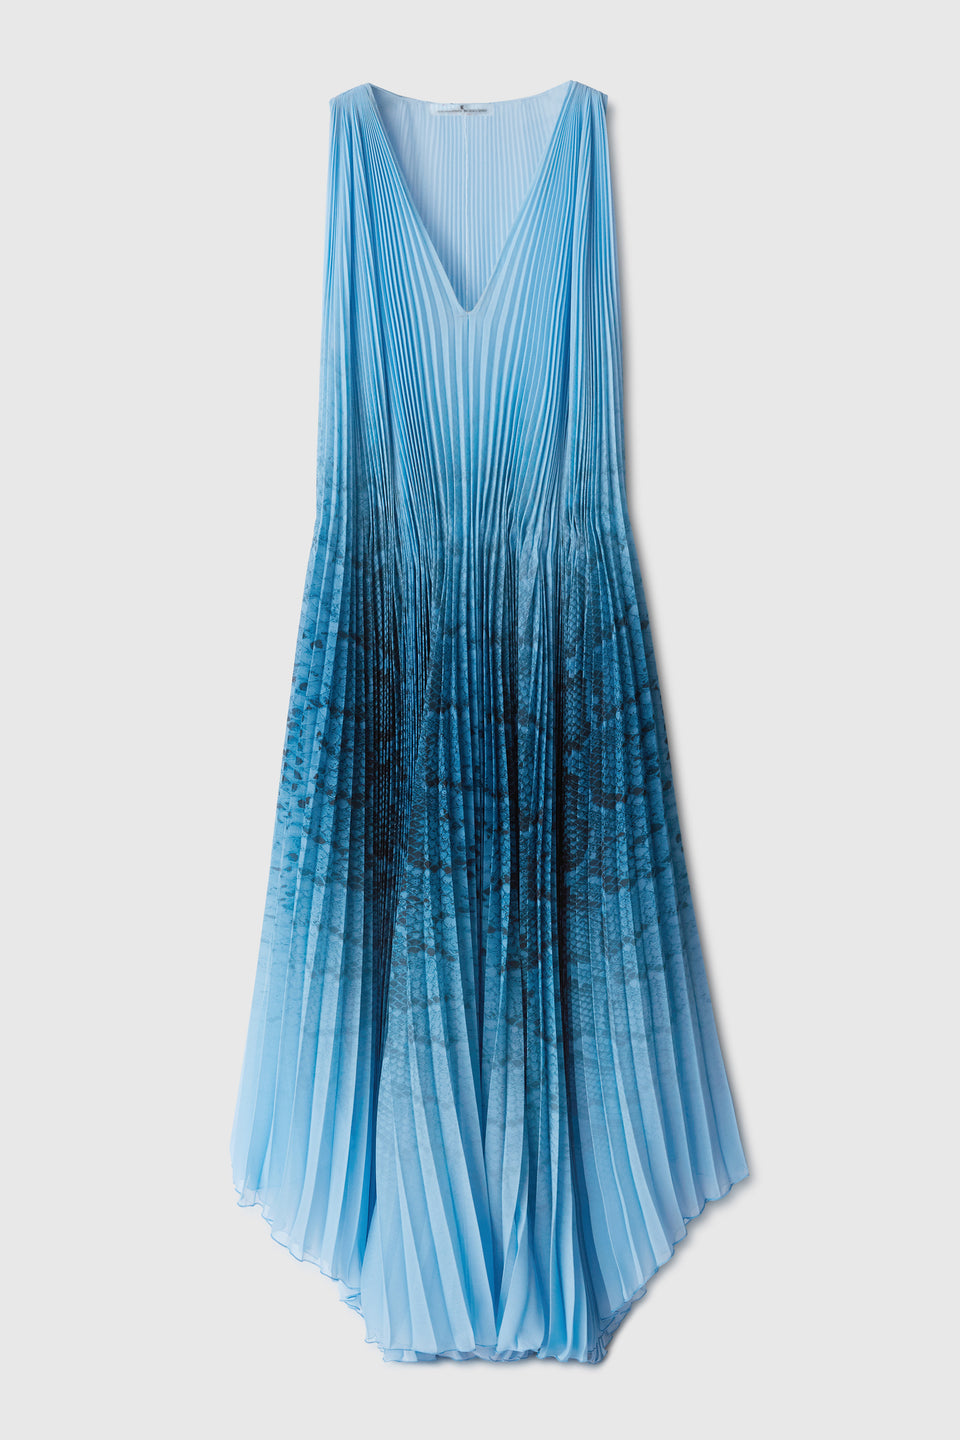 Midi dress in light blue fabric